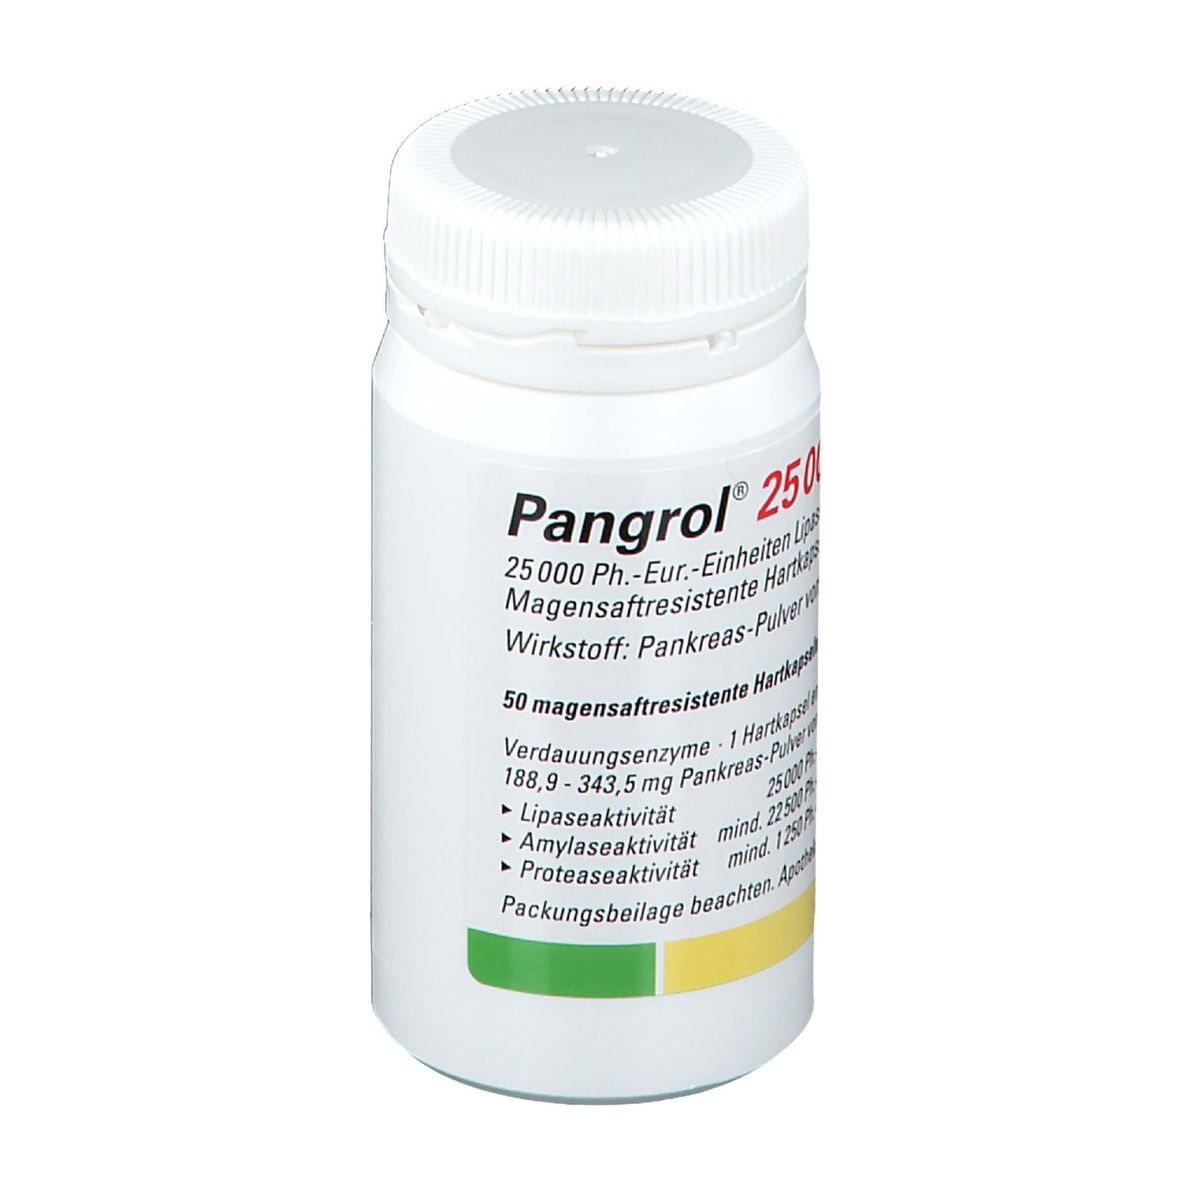 Pangrol® 25000 Kapseln